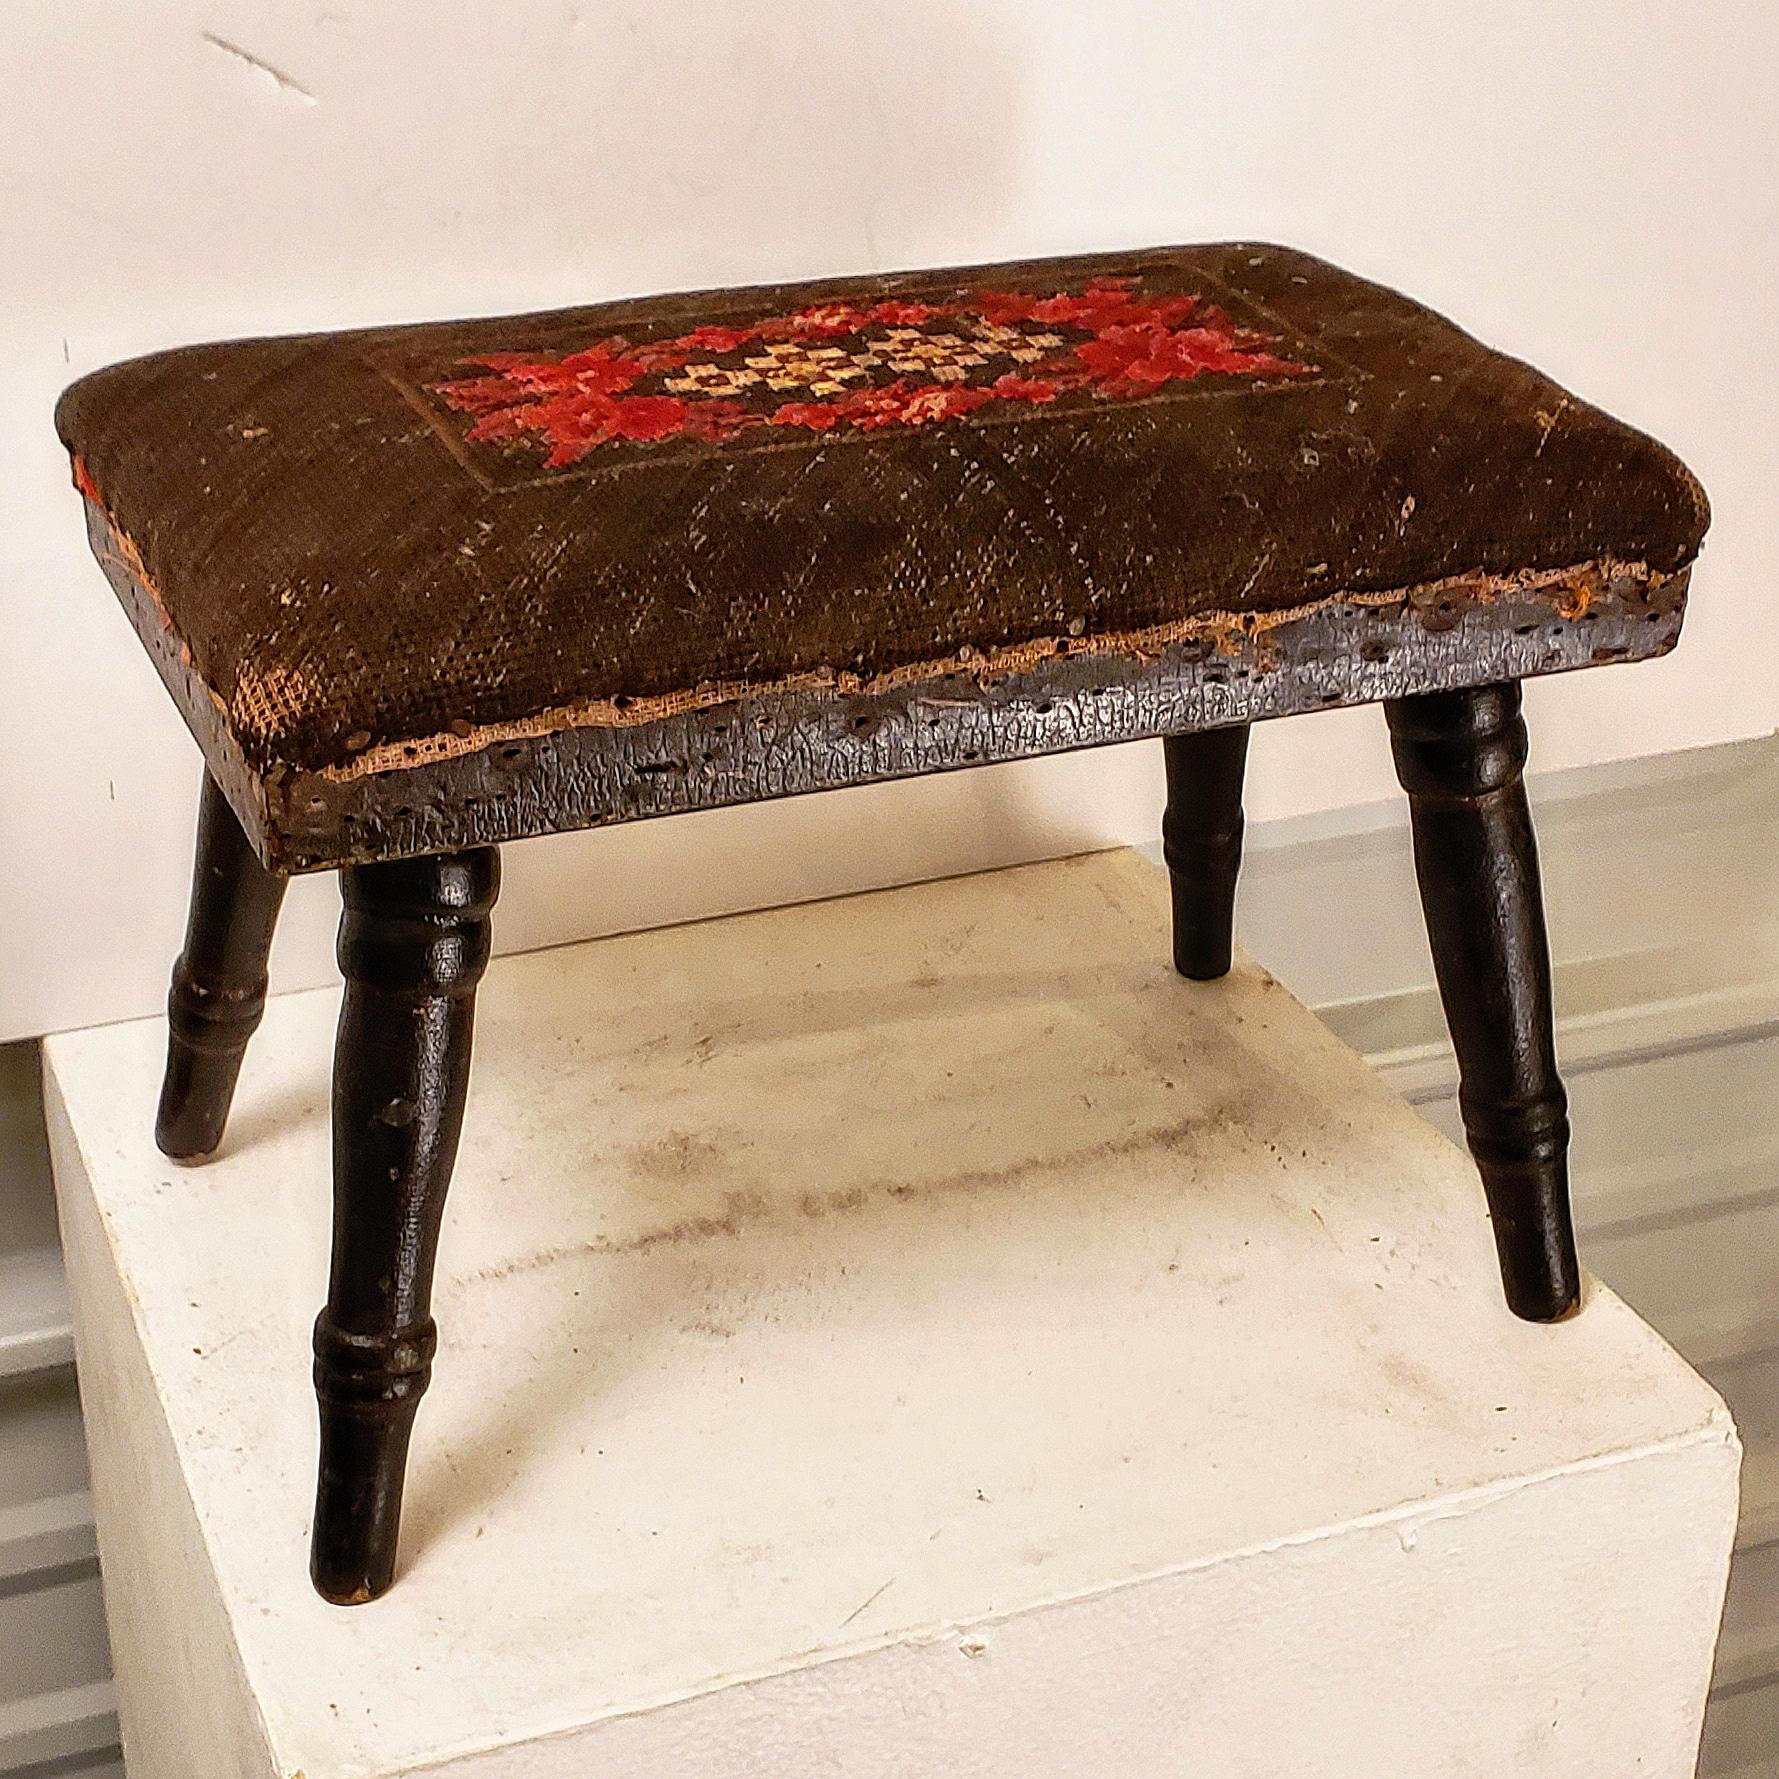 American Sheraton foot stool. Likely NY circa 1930's. Retaining original finish and needlepoint upholstery.